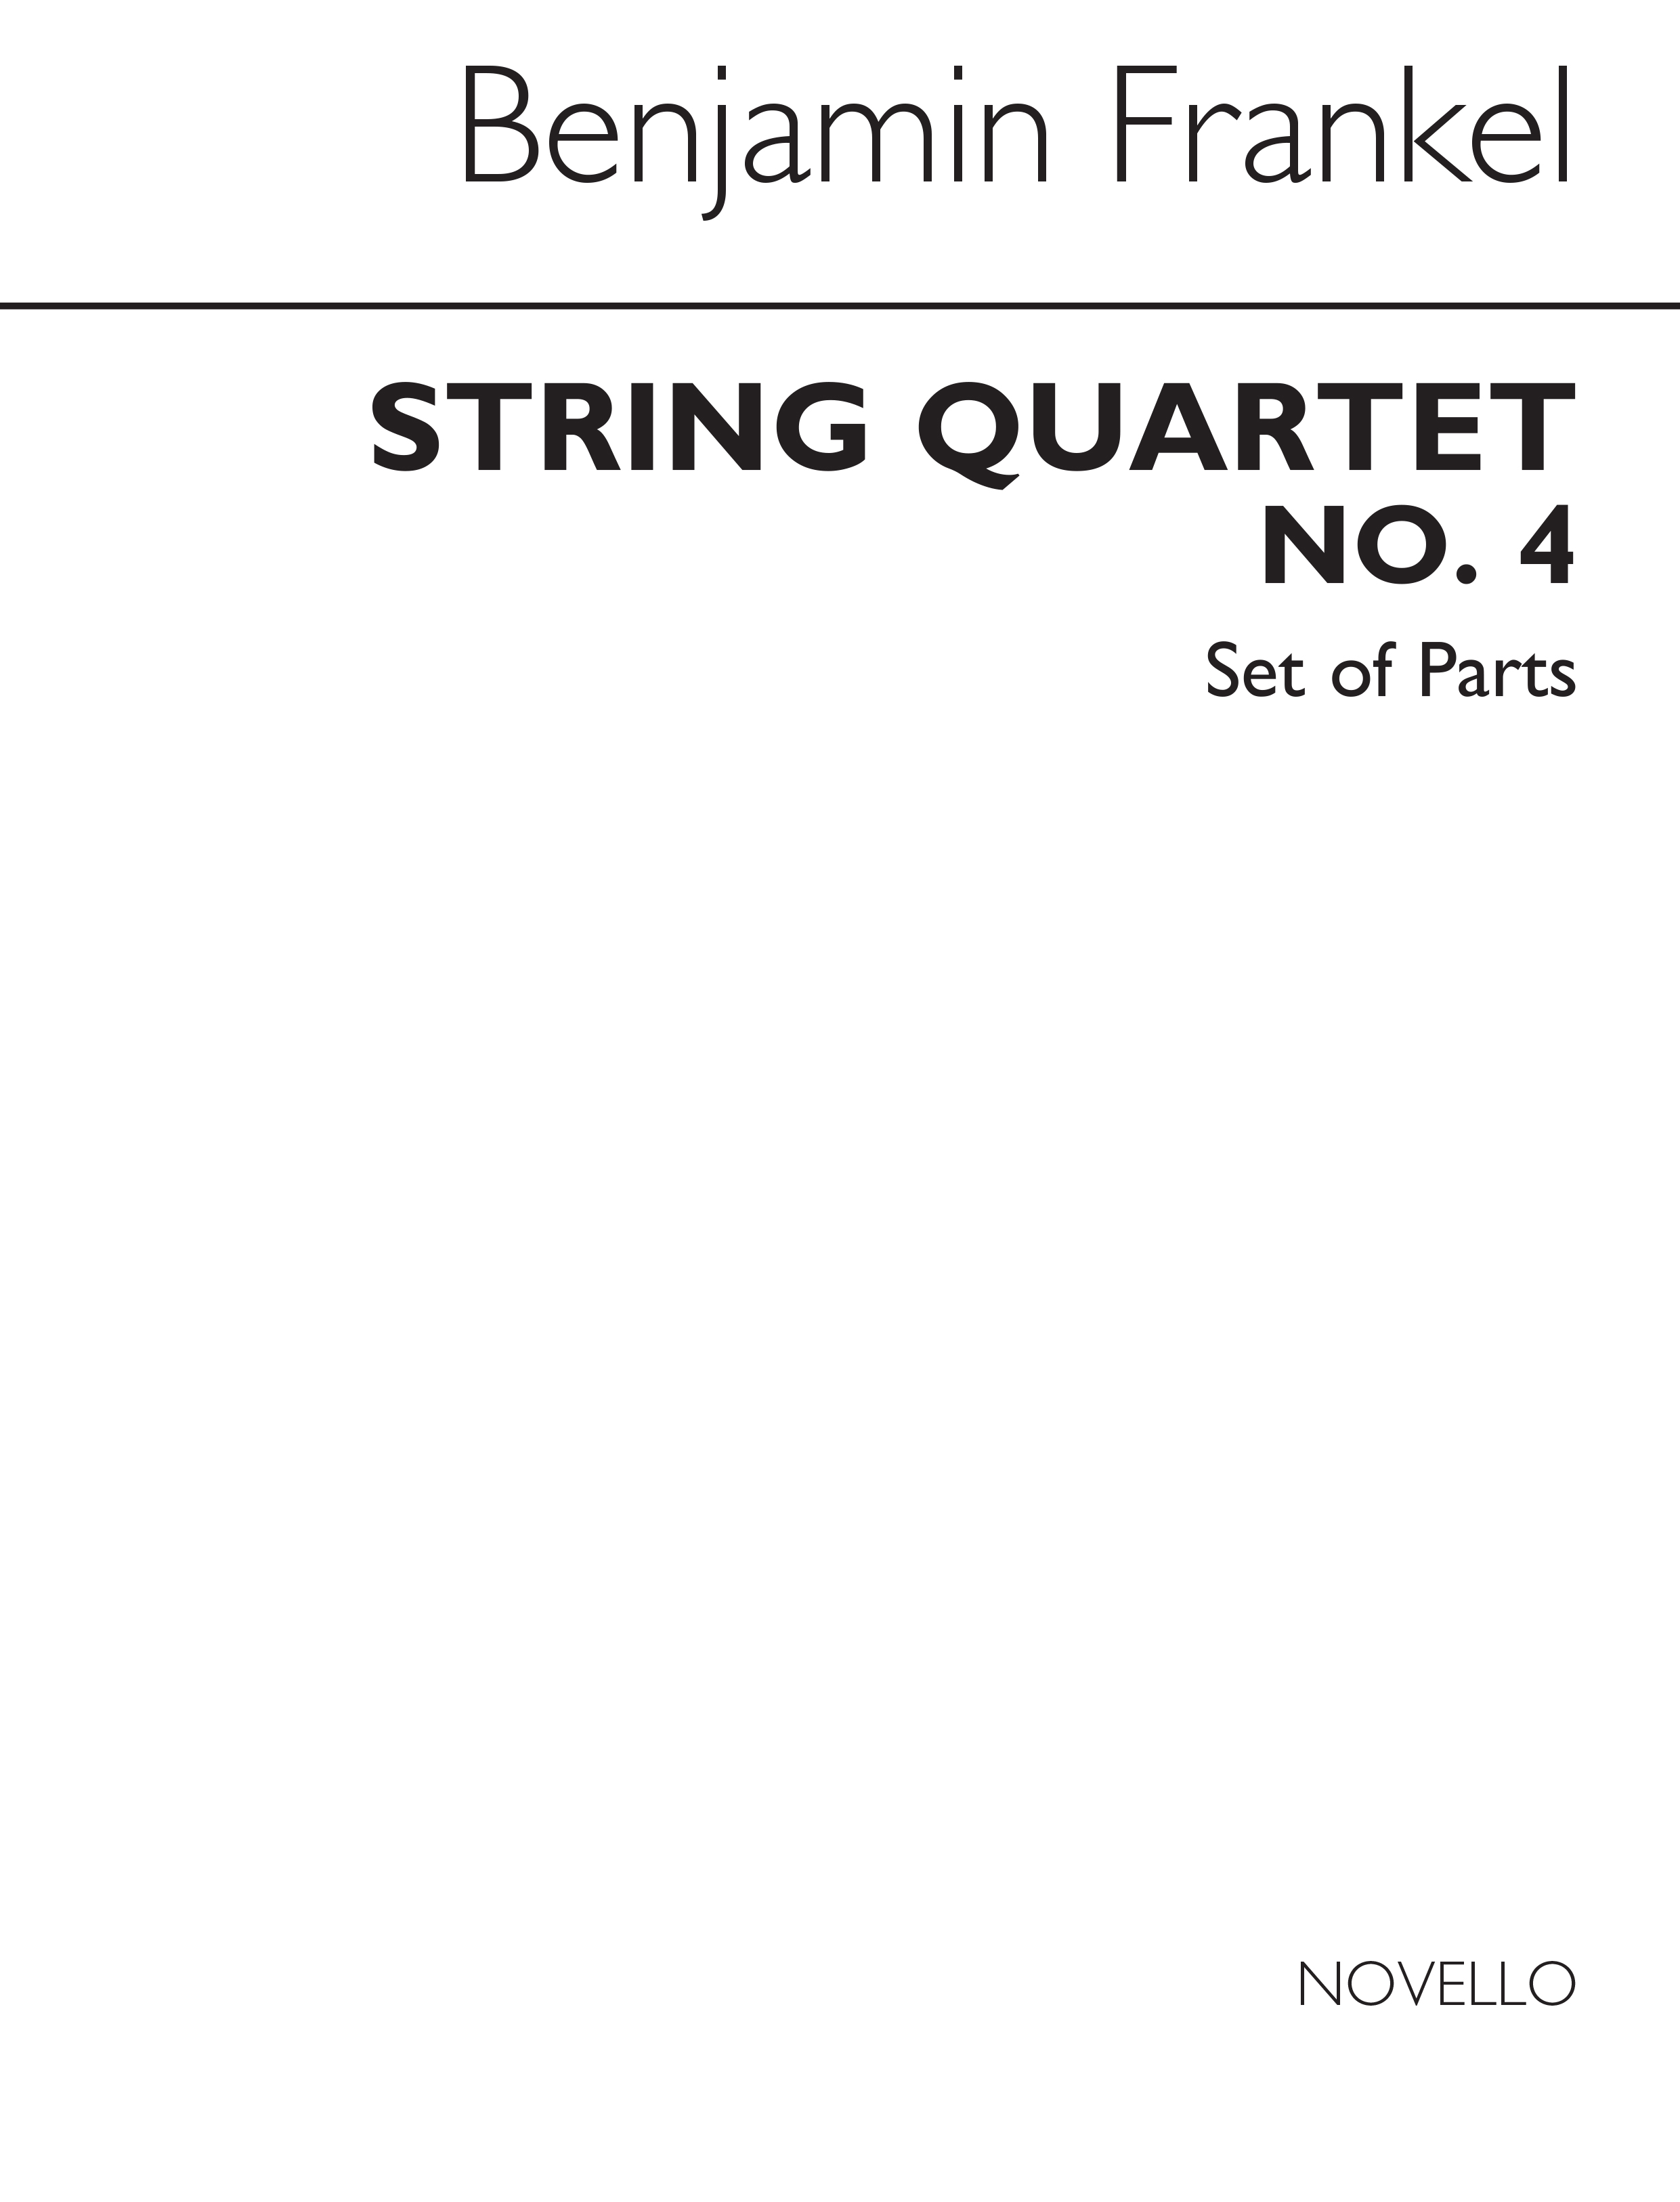 Frankel, Benjamin String Quartet No.4 Parts